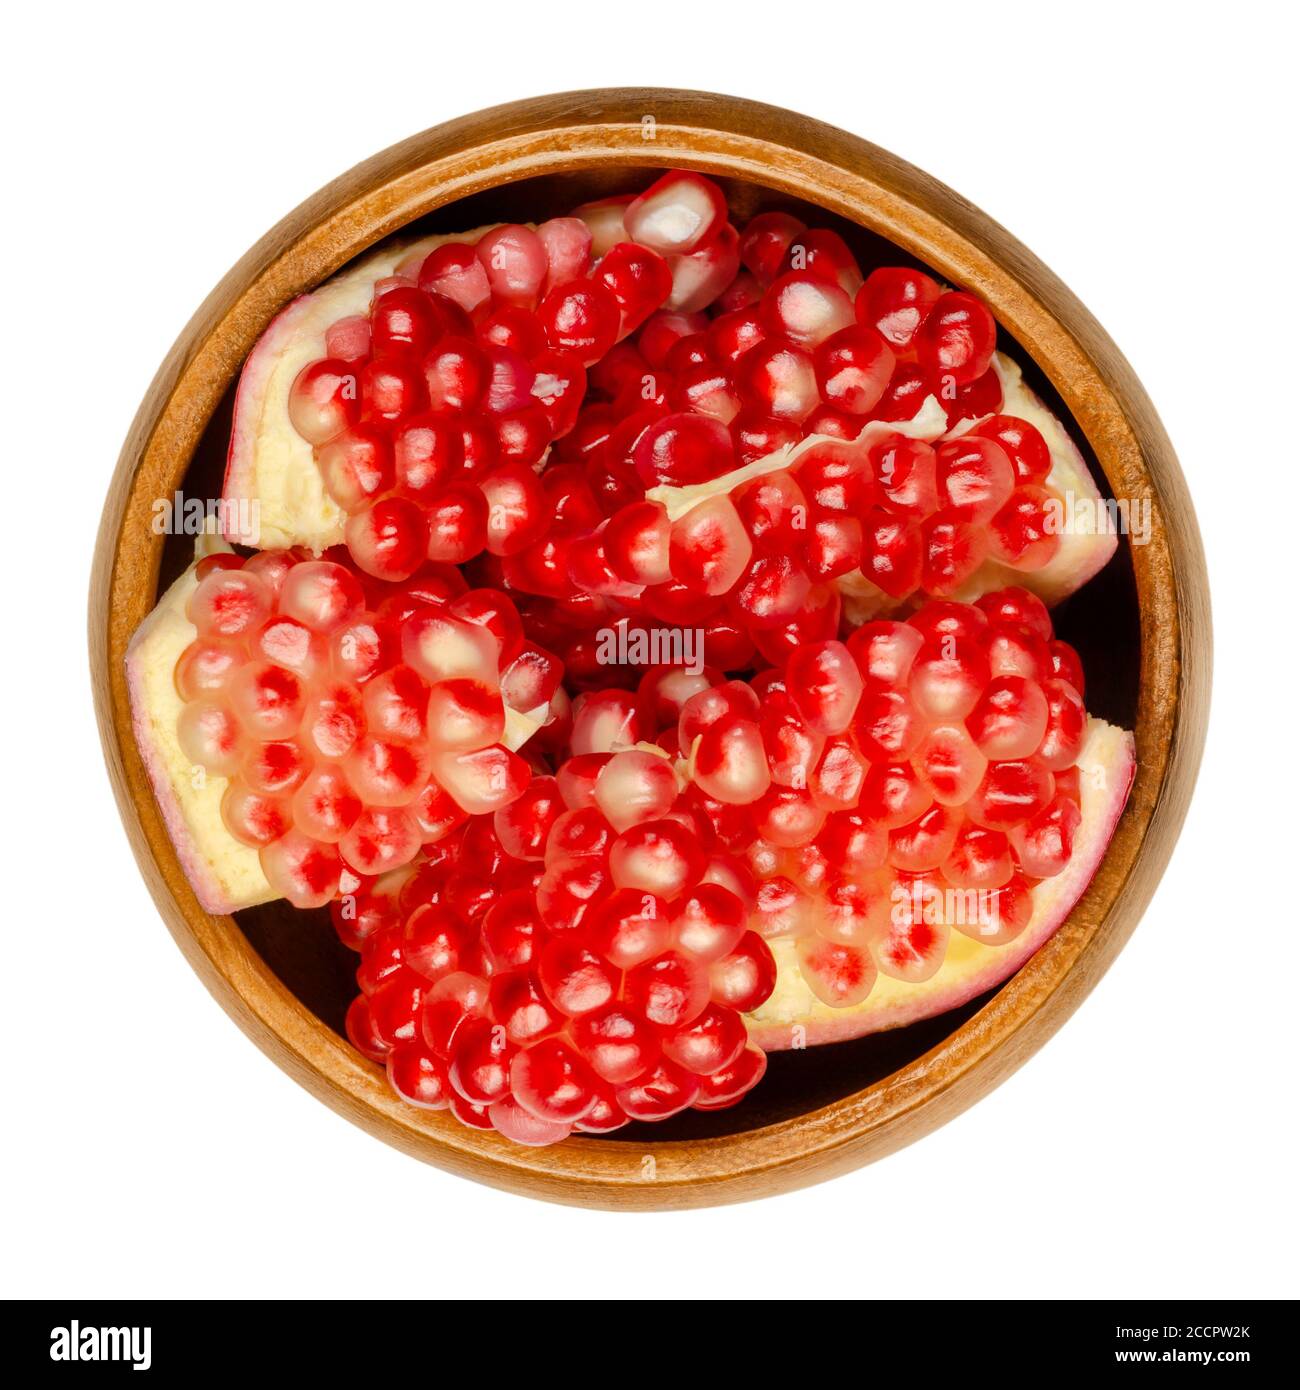 Granatapfel Cluster in einer Holzschale. Punica granatum. Früchte mit roten bis violetten Samengruppen. Kann frisch gegessen, entsaften, oder verwendet werden, um Grandine zu machen. Stockfoto